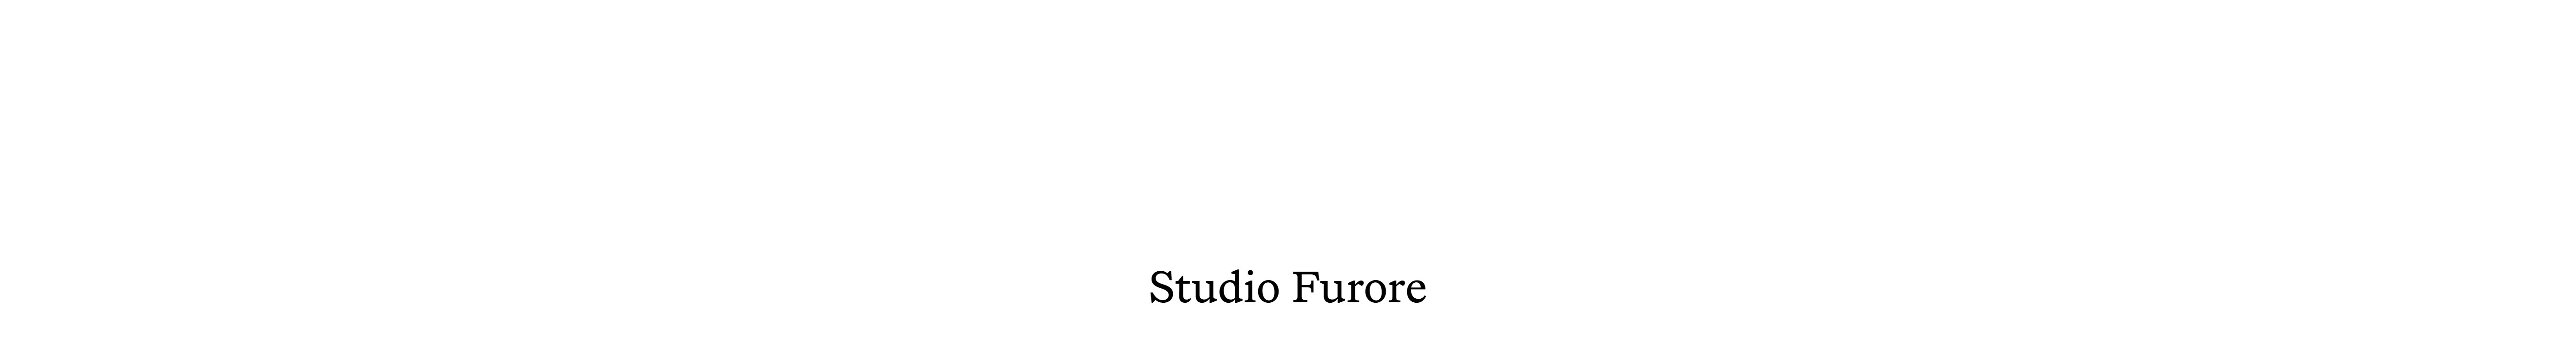 Studio Furore's profile banner